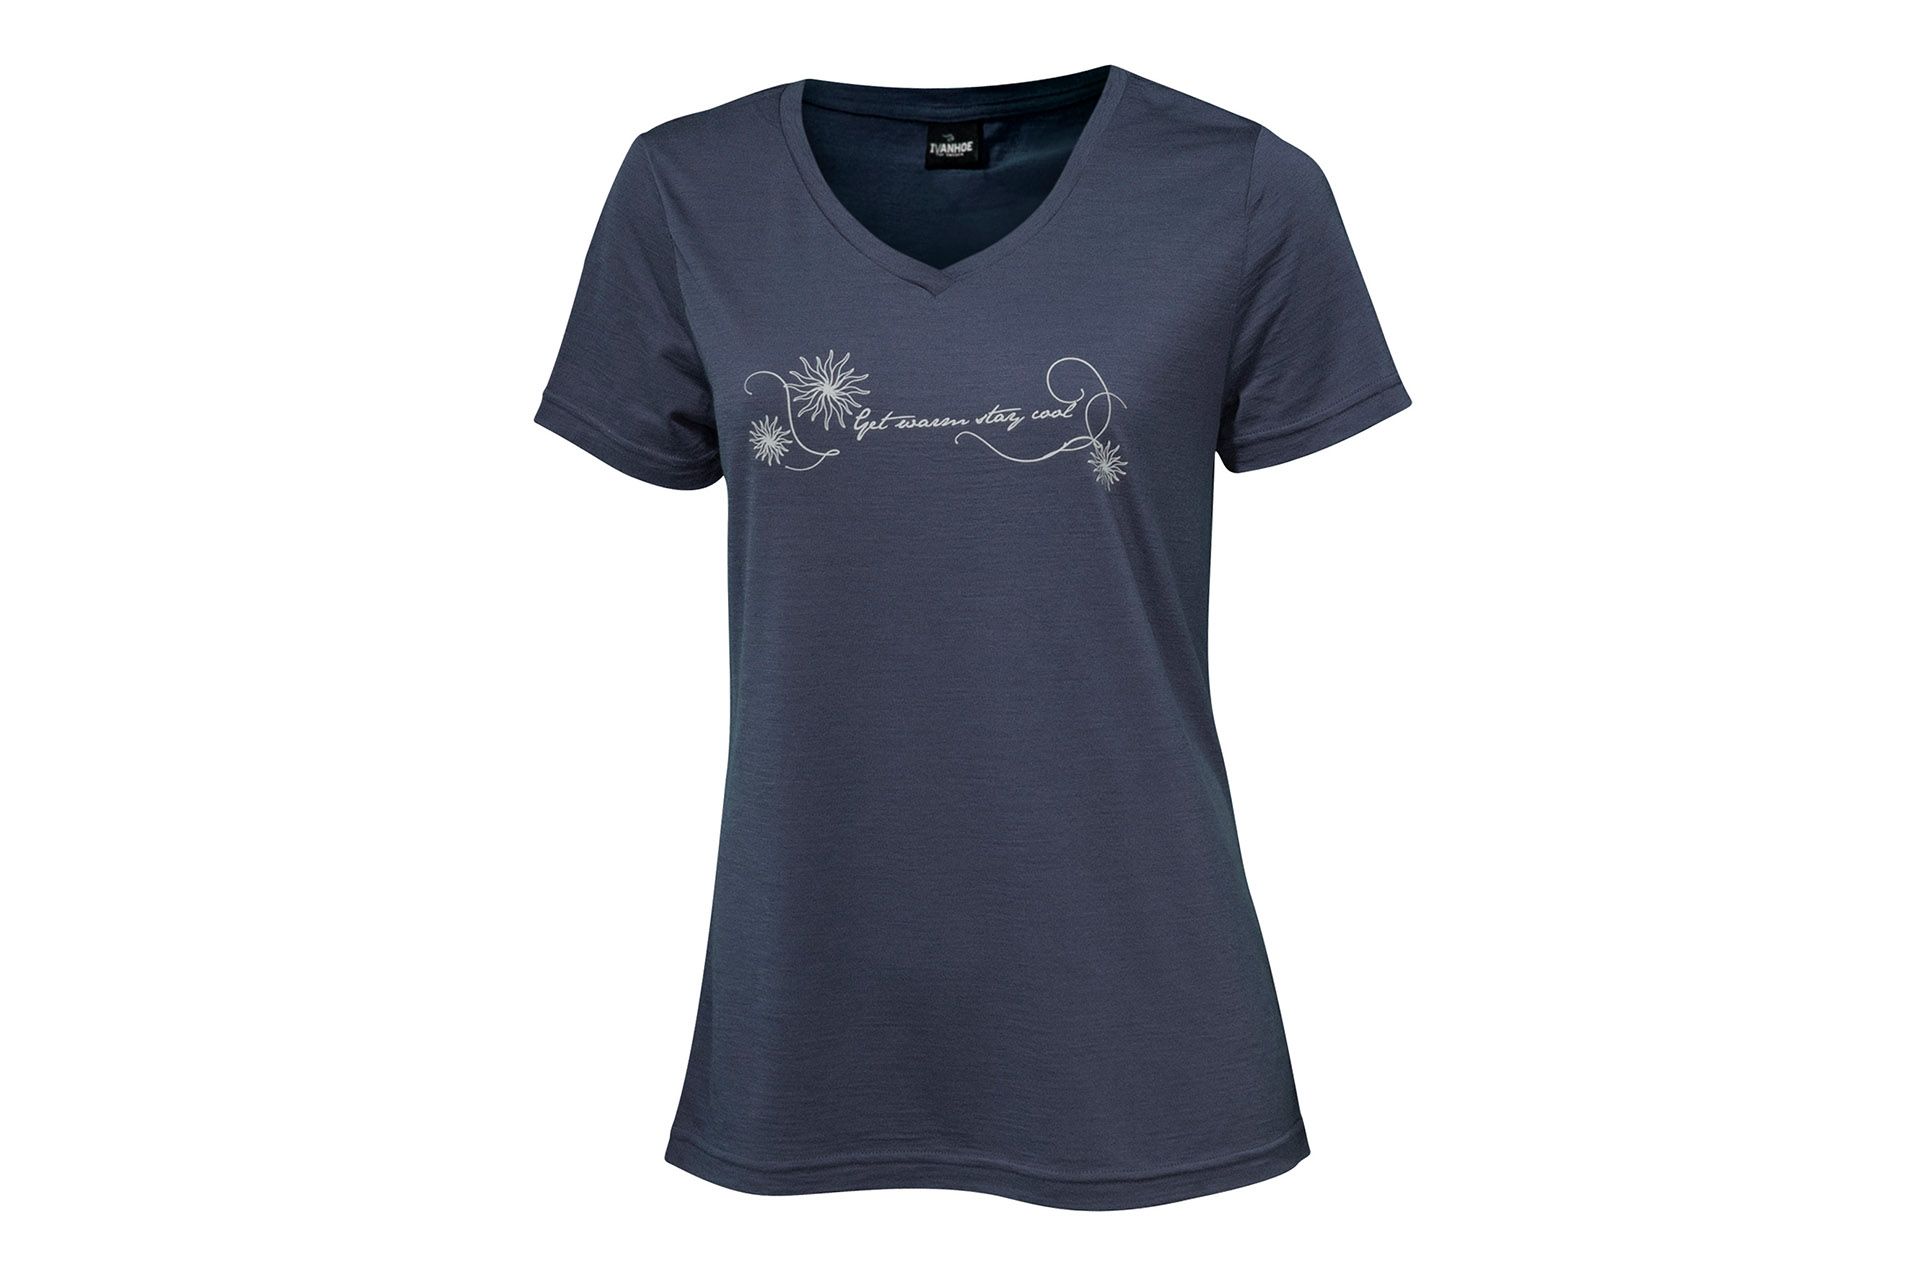 Damen-T-Shirt von IVANHOE, Modell "Mim GWSC" Steelblue